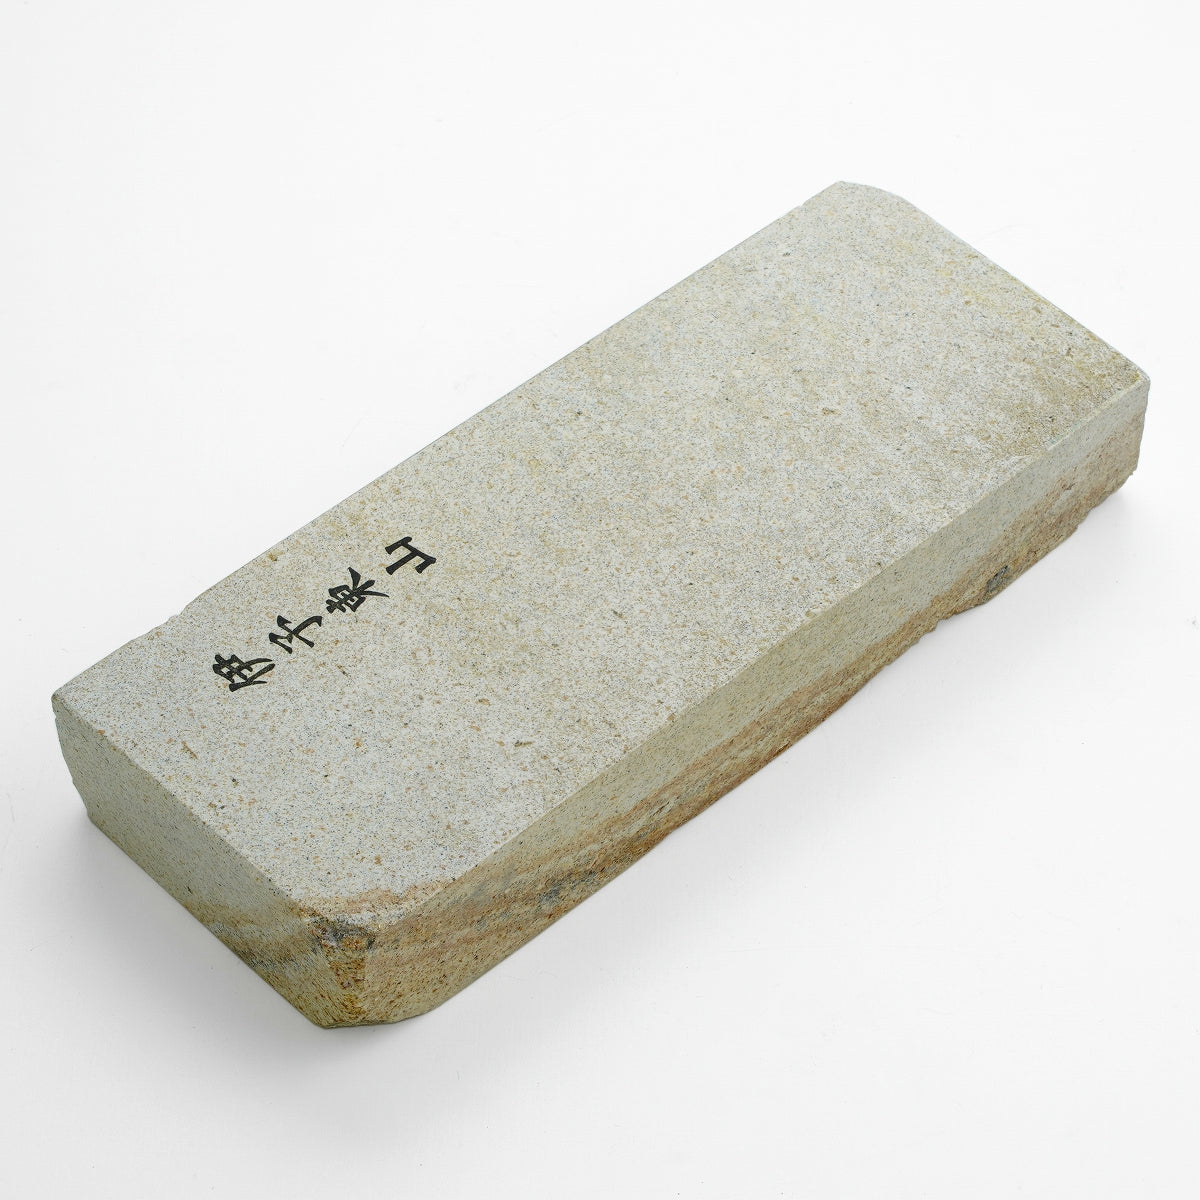 "IYO HIGASHIYAMA", Tennen Toishi (Japanese Natural Stone), 1412g